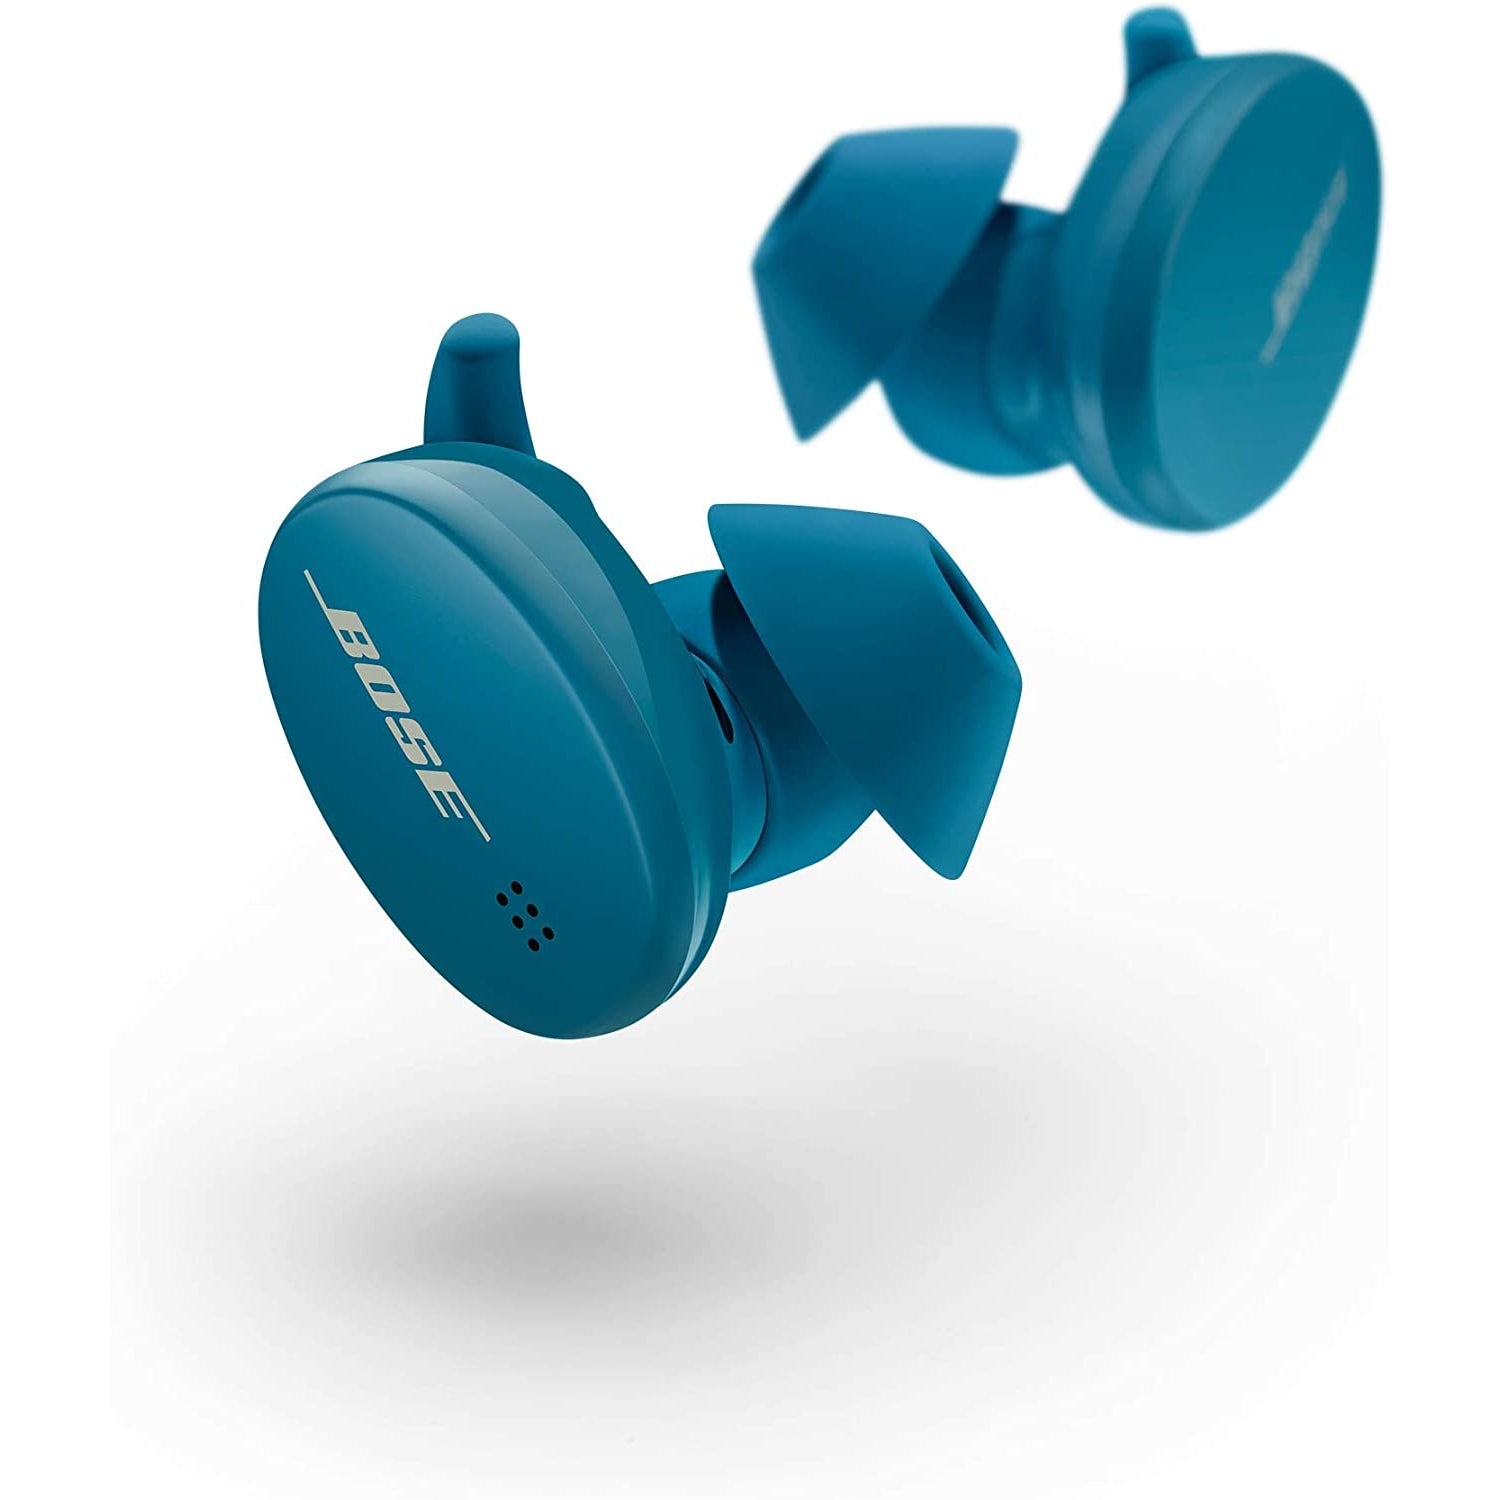 Bose Sport In-Ear True Wireless Earbuds - Baltic Blue - New